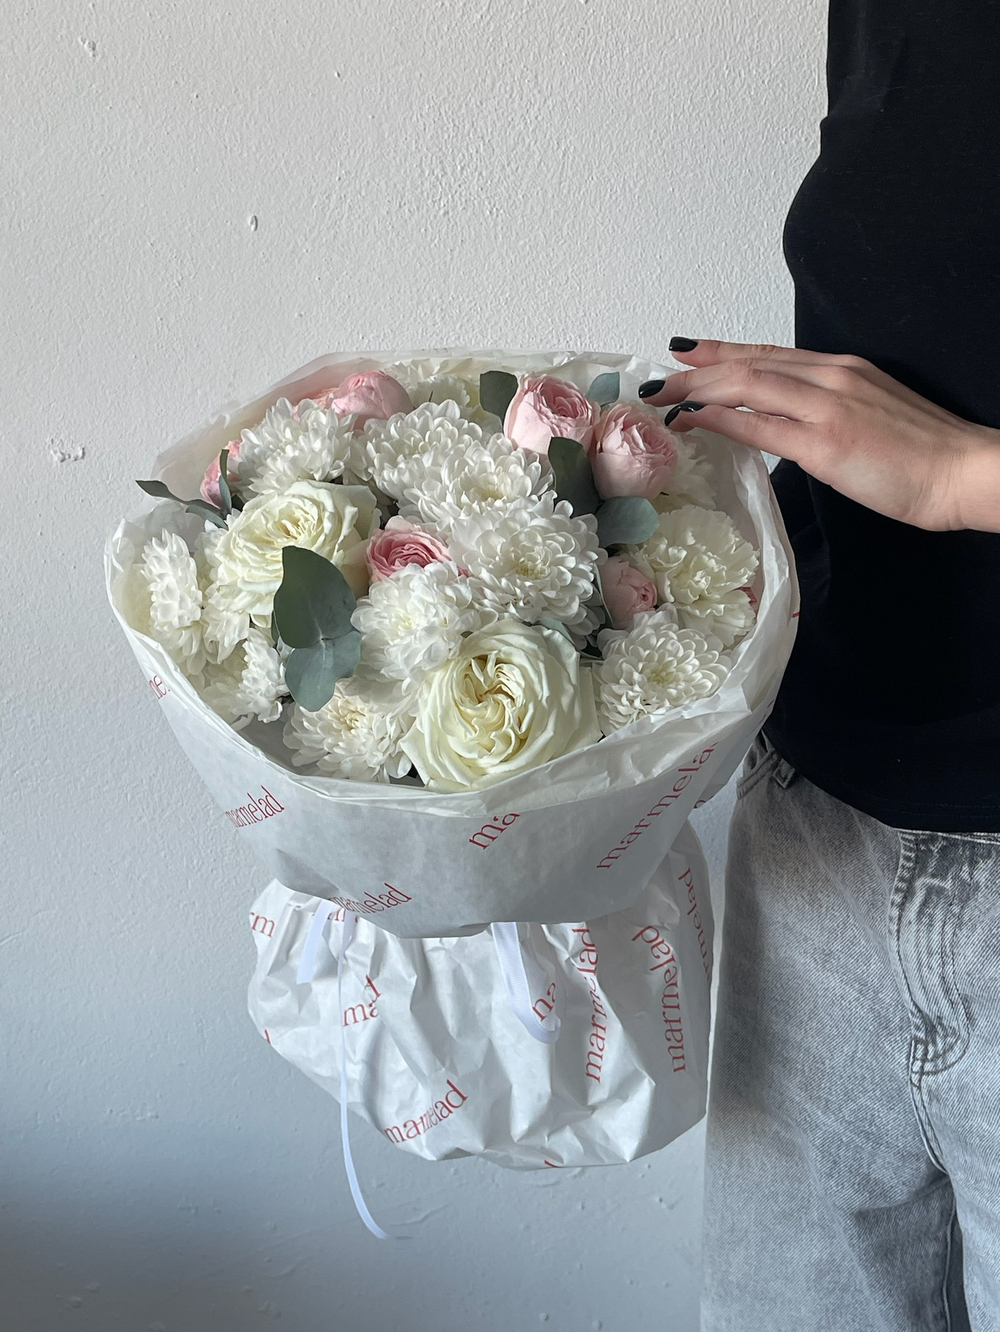 Сборный букет из белоснежной хризантемы, кустовой пионовидной розы и диантусов